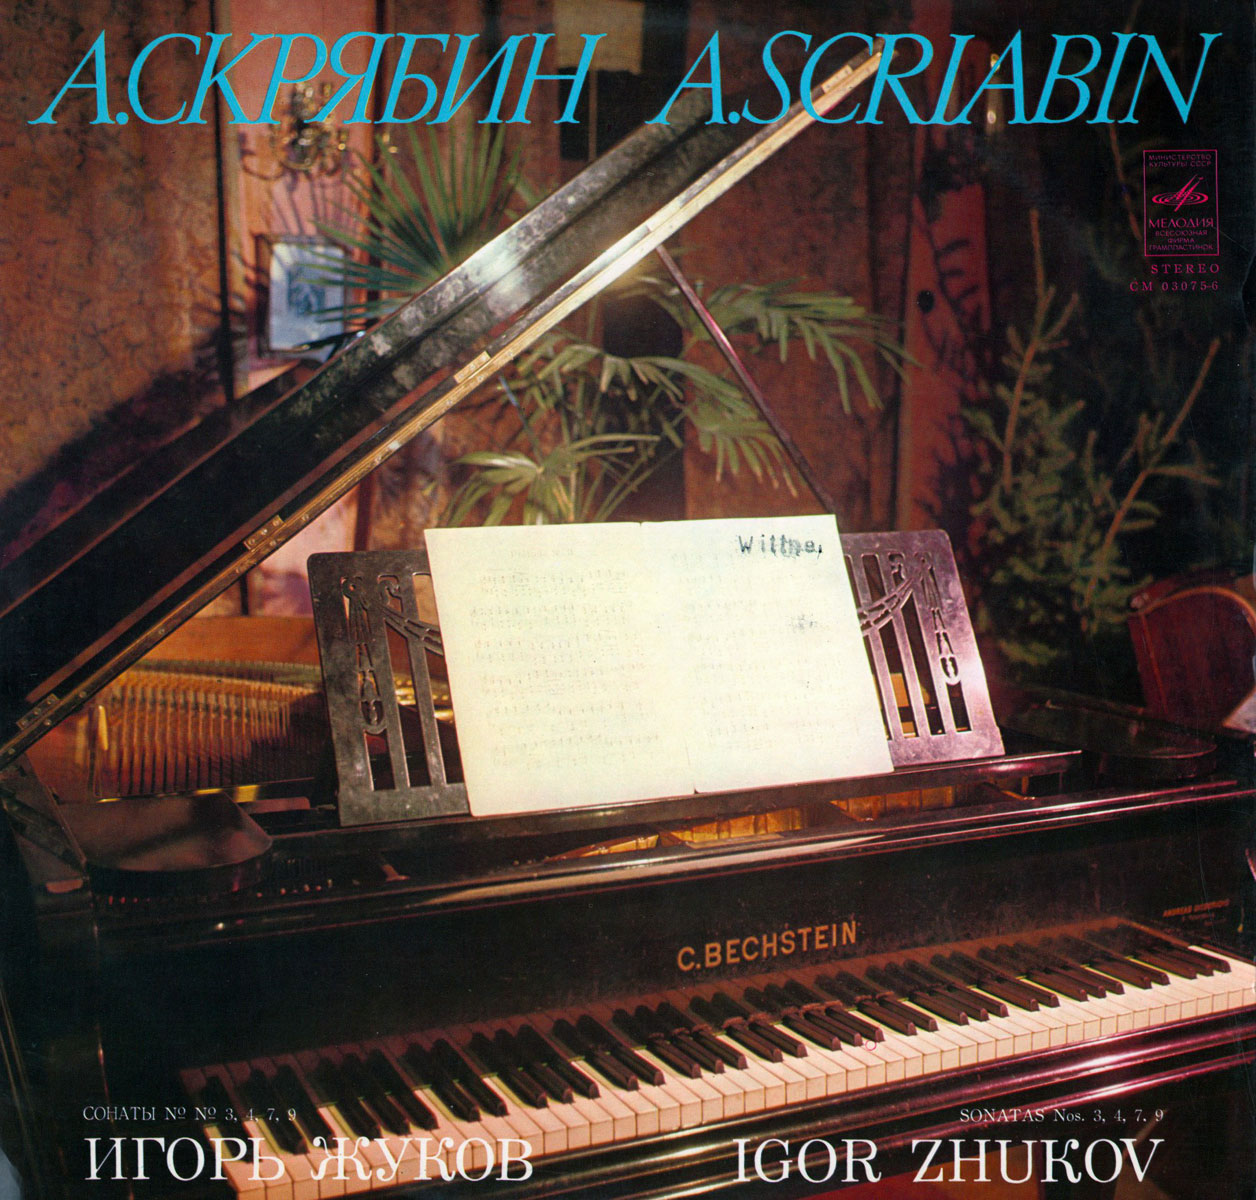 А. СКРЯБИН (1872–1915): Сонаты для фортепиано (И. Жуков)